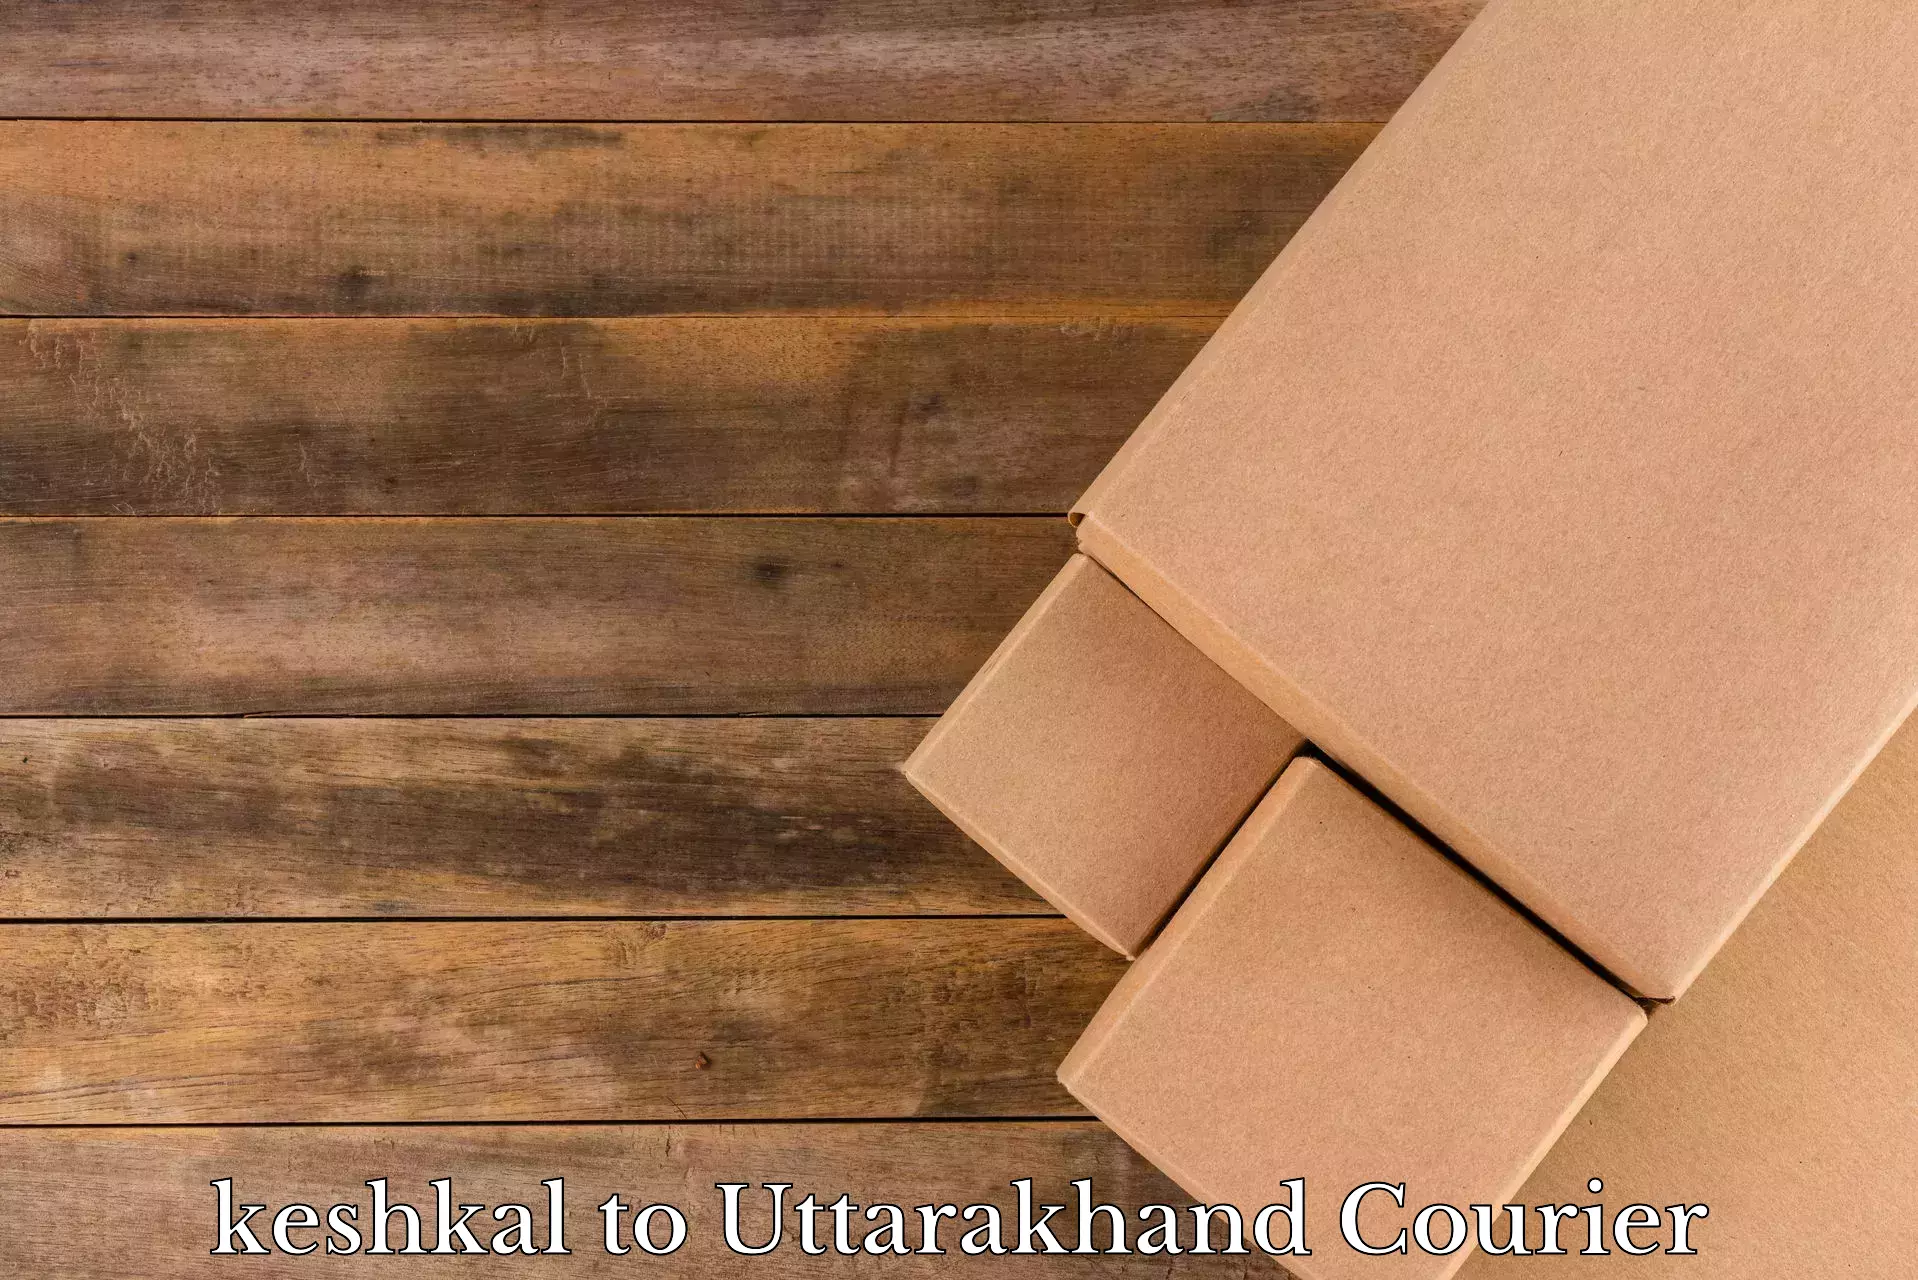 Furniture shipping services keshkal to Rishikesh